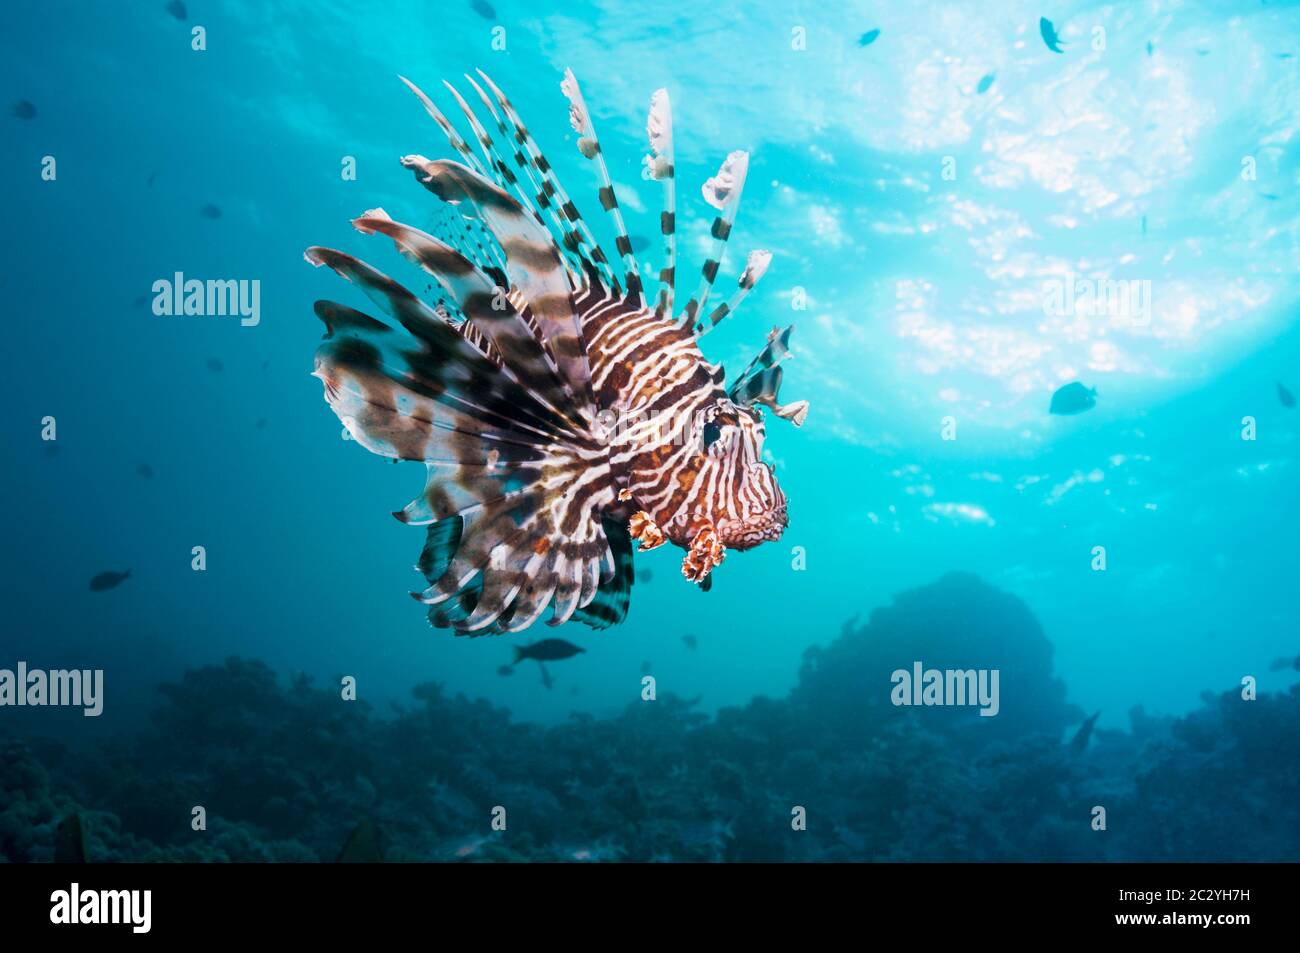 Poisson-papillon commun ou devil firefish (Pterois miles). Souvent confondu avec poisson-papillon rouge (Pterois volitans). Endémique de la Mer Rouge. L'Egypte, Mer Rouge. Banque D'Images